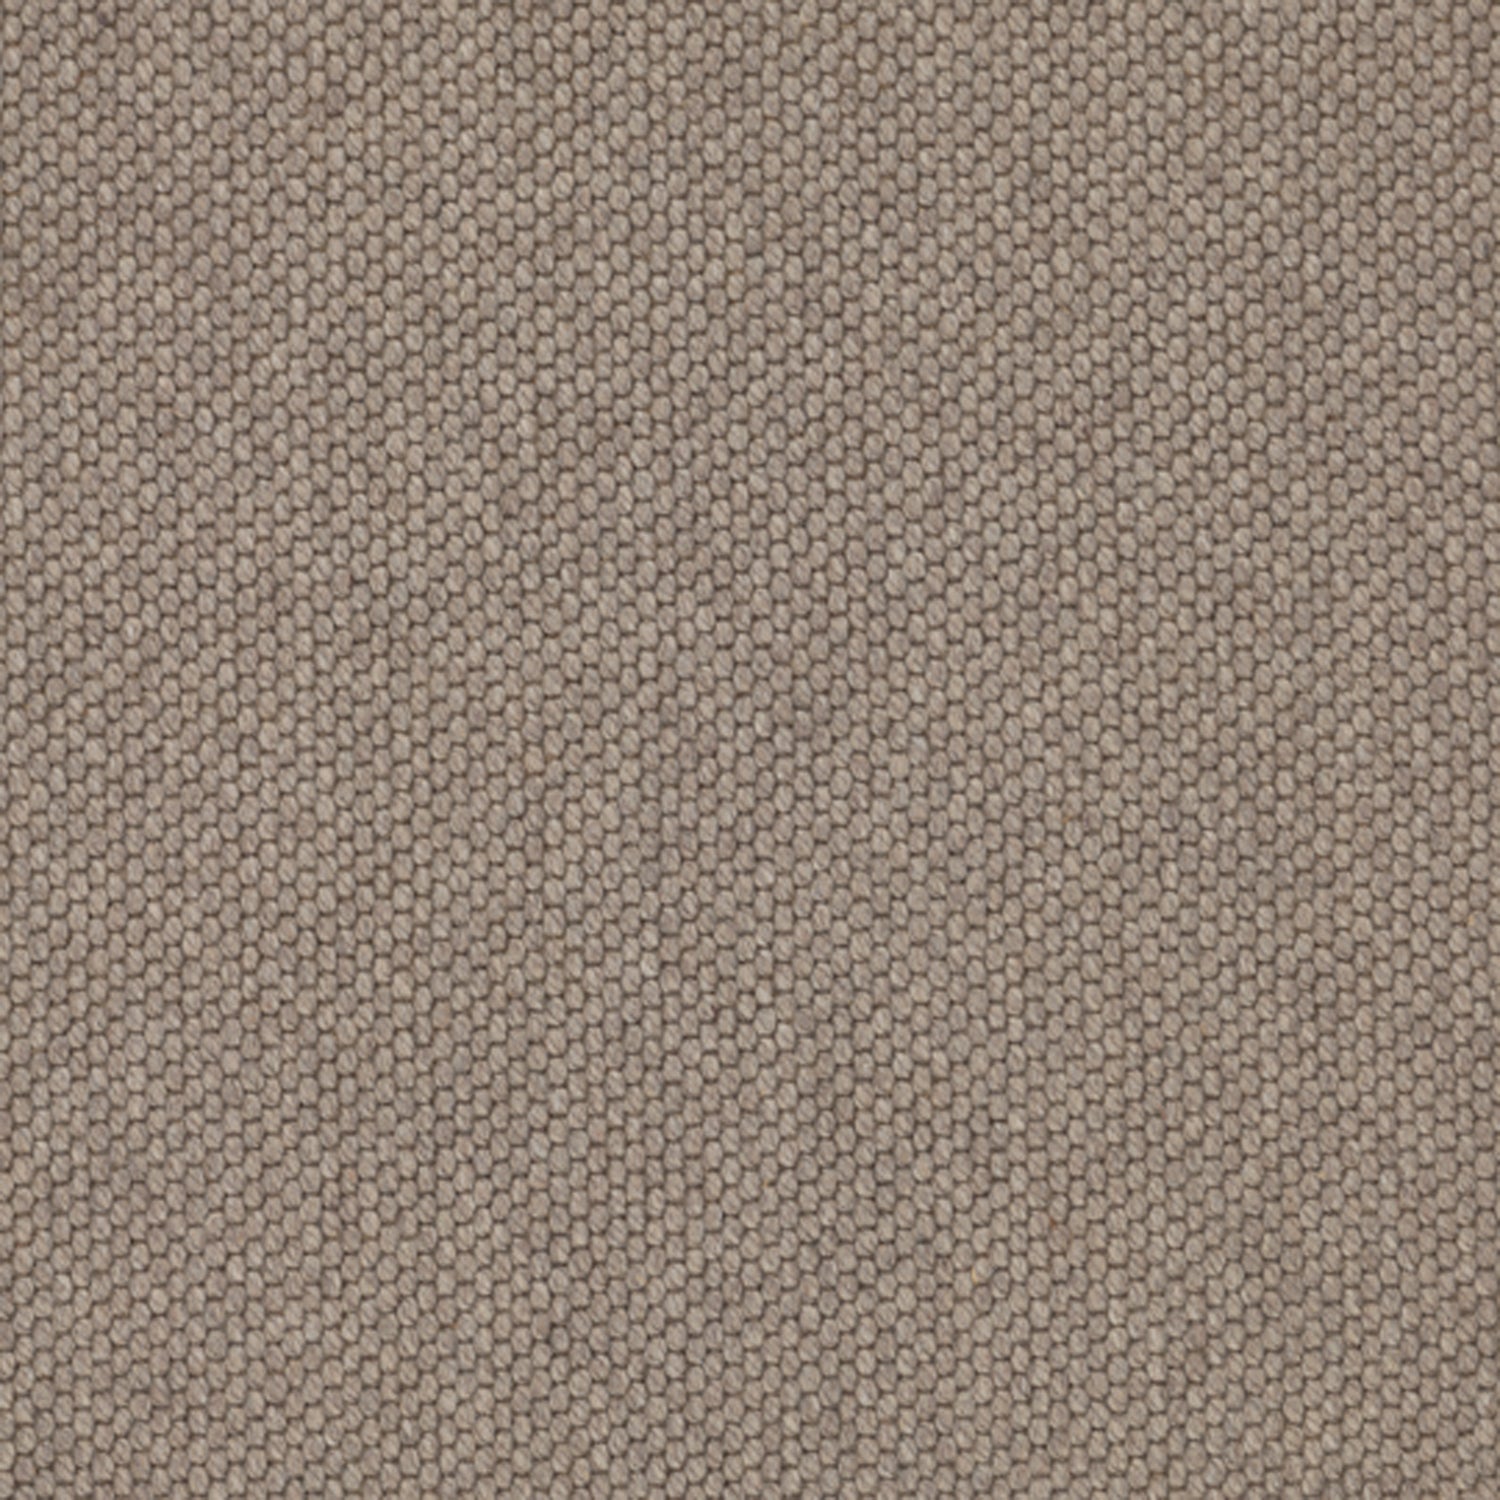 Wool broadloom carpet swatch in a chunky grid weave in greige.